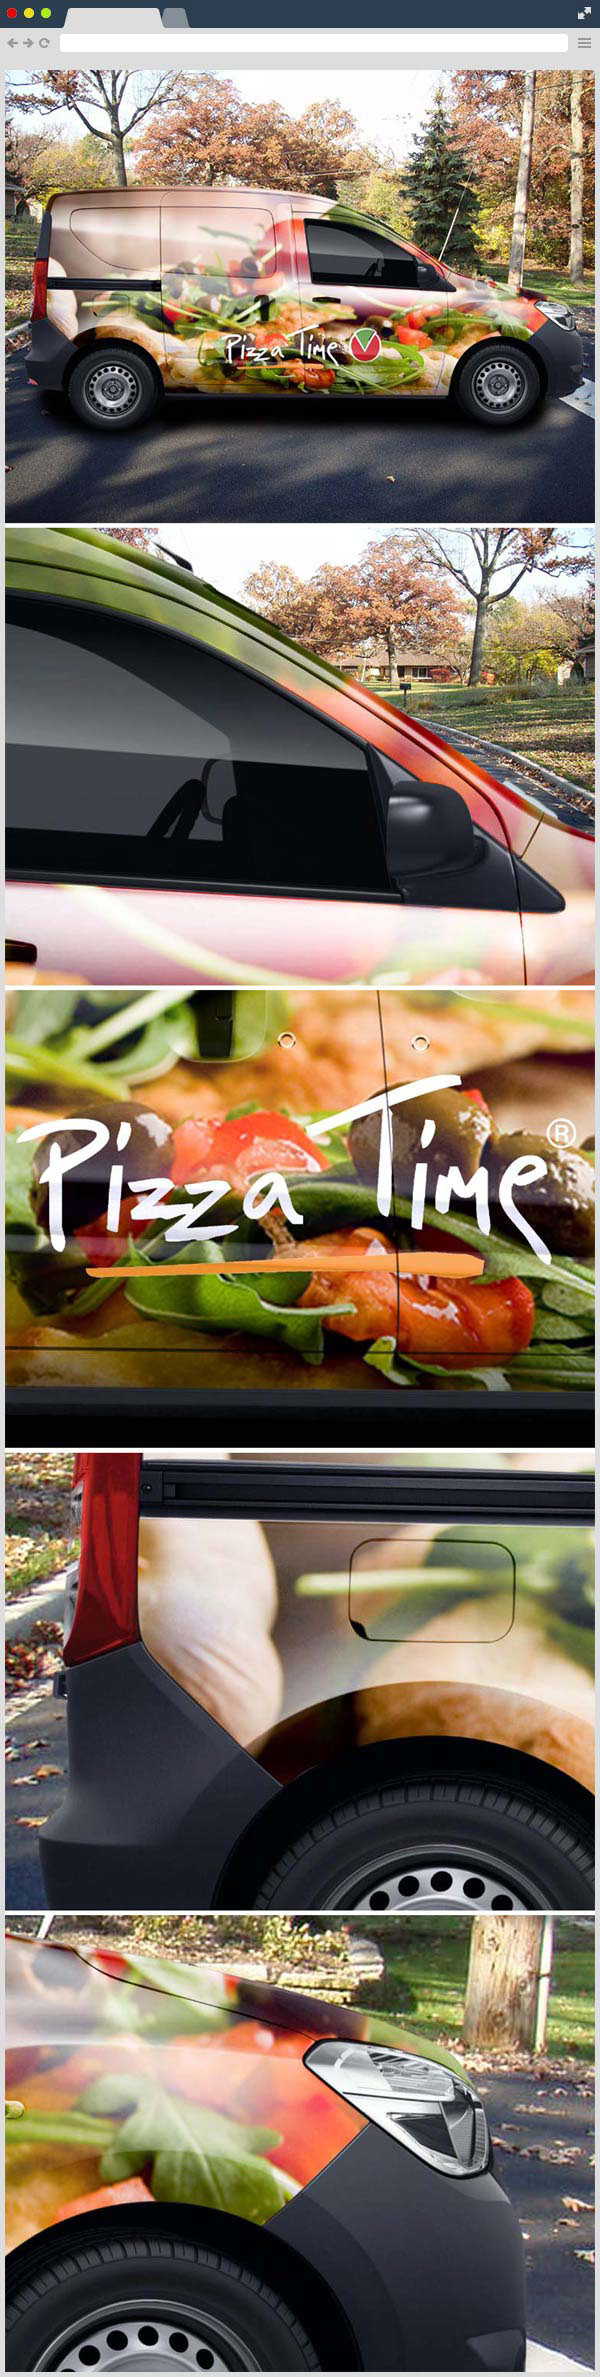 Pizza Auto Van firefox psd chrome mockups Mockup download freebies freebie free